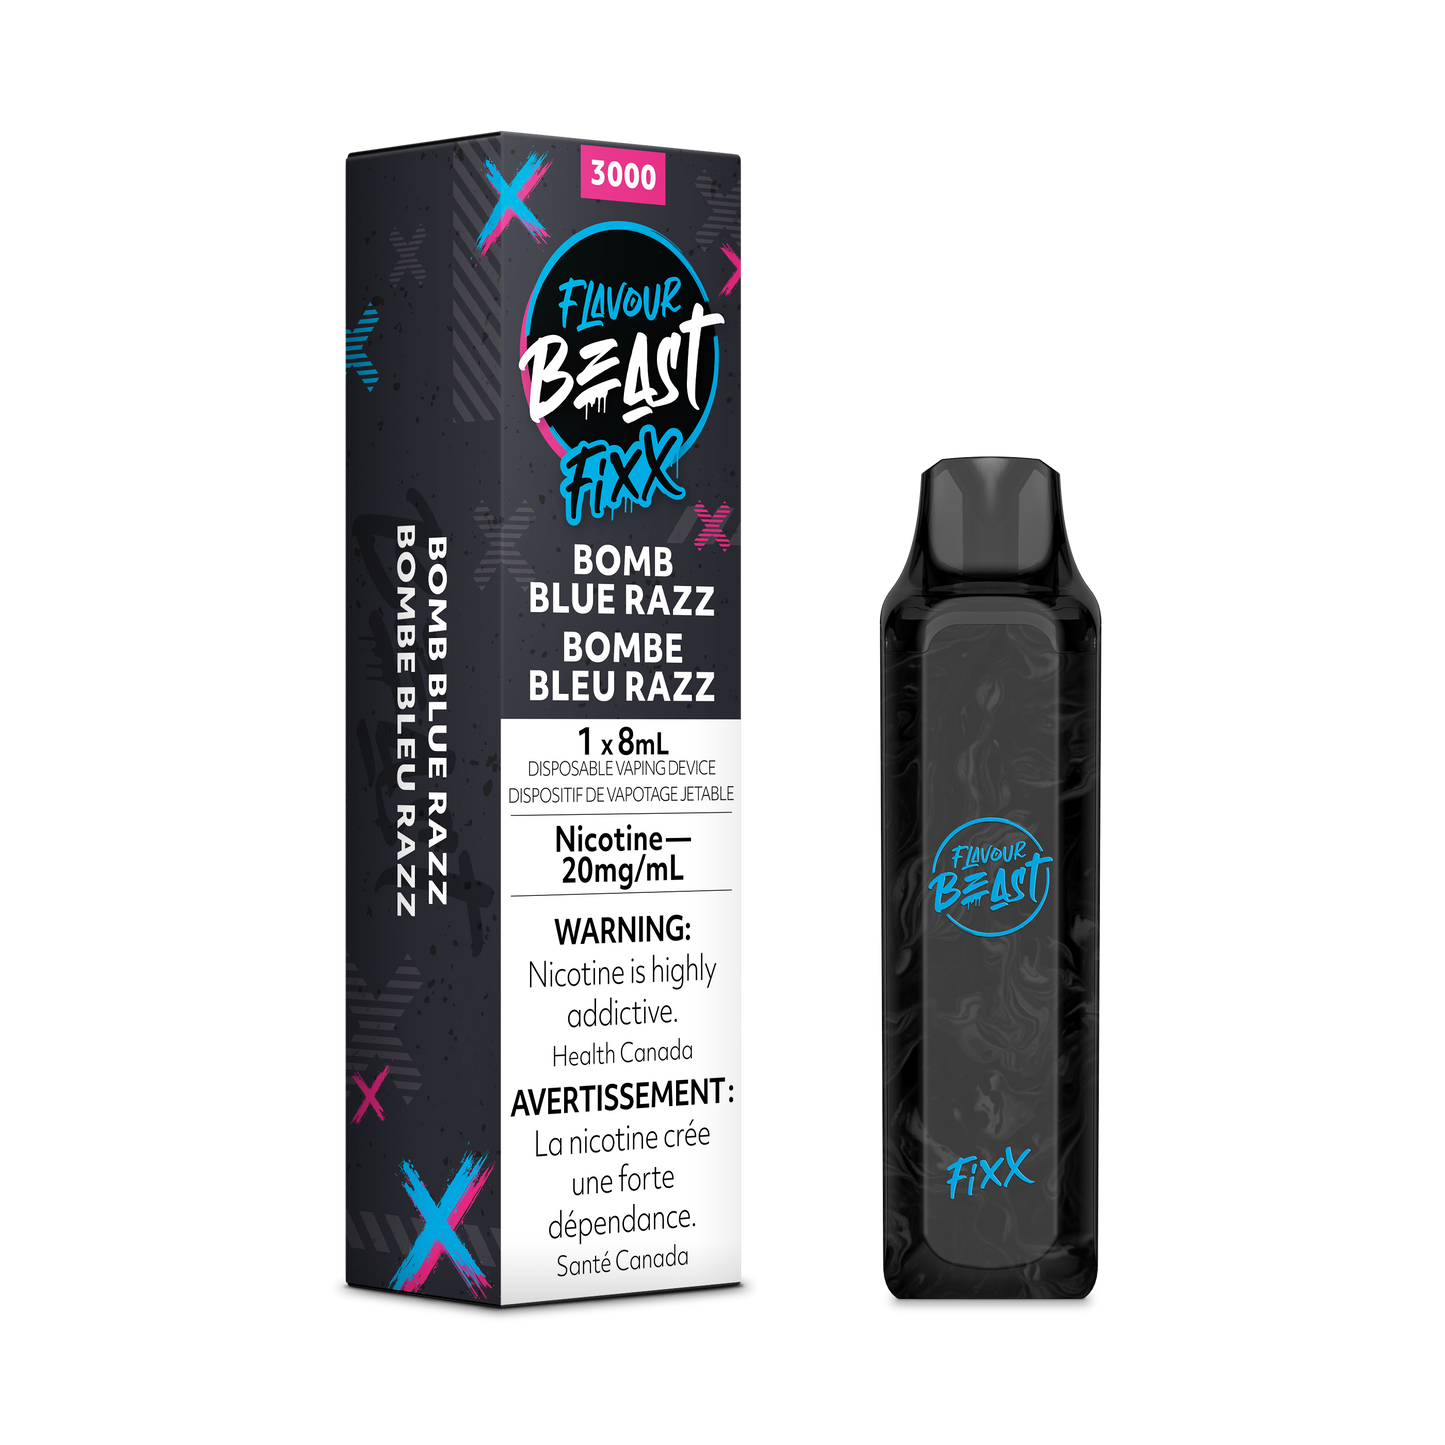 Flavour Beast Fixx - Bomb Blue Razz